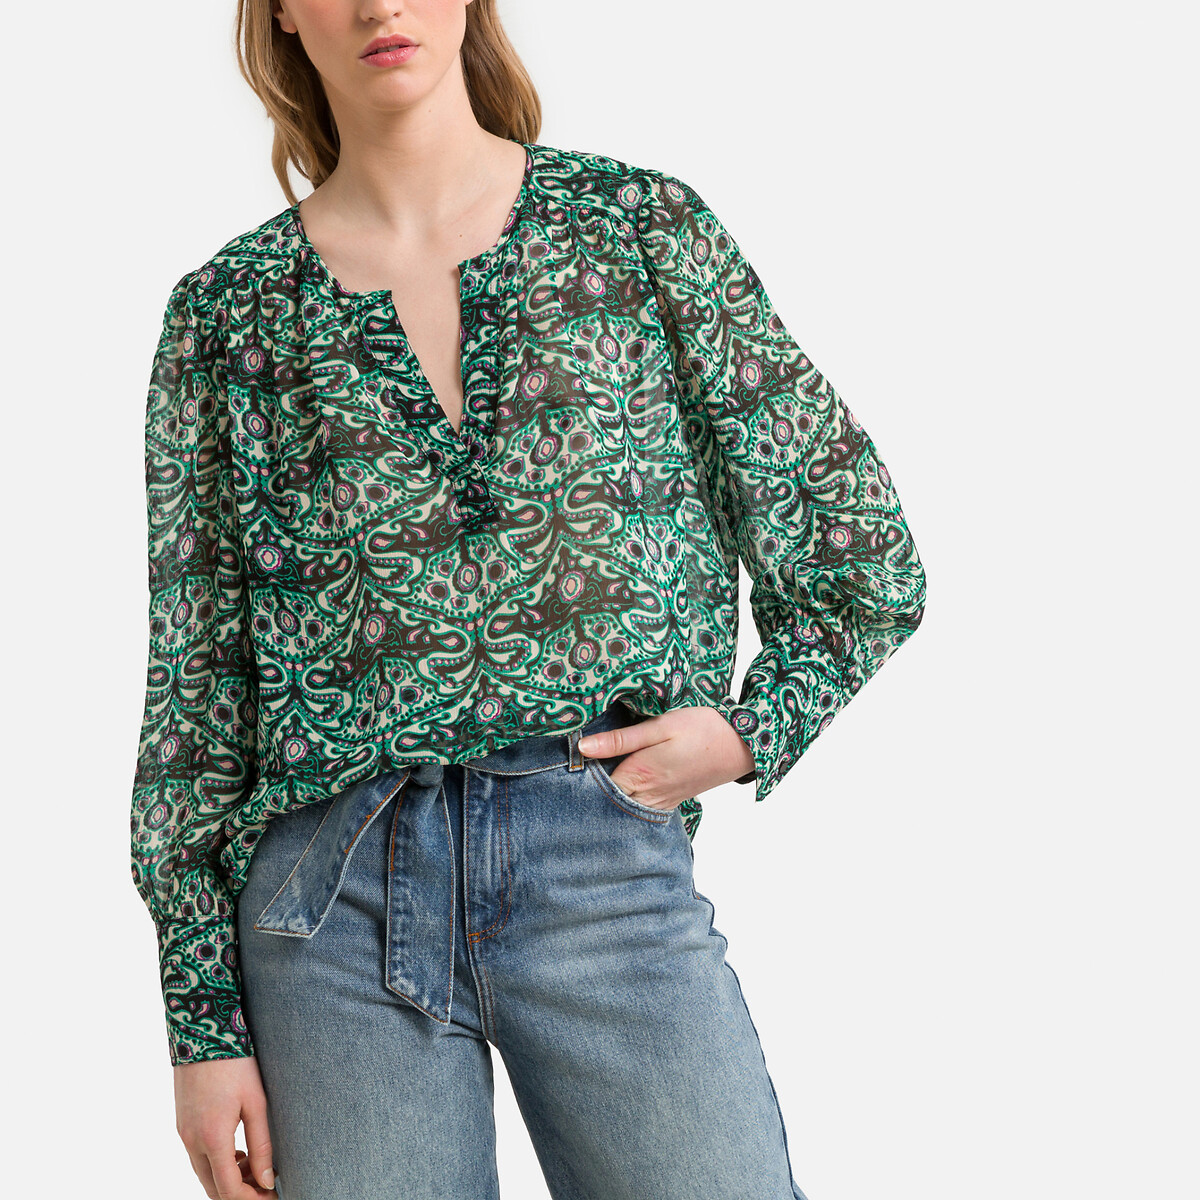 Блузка с принтом и длинными рукавами 2(M) зеленый блузка с принтом и v образным вырезом xl бежевый